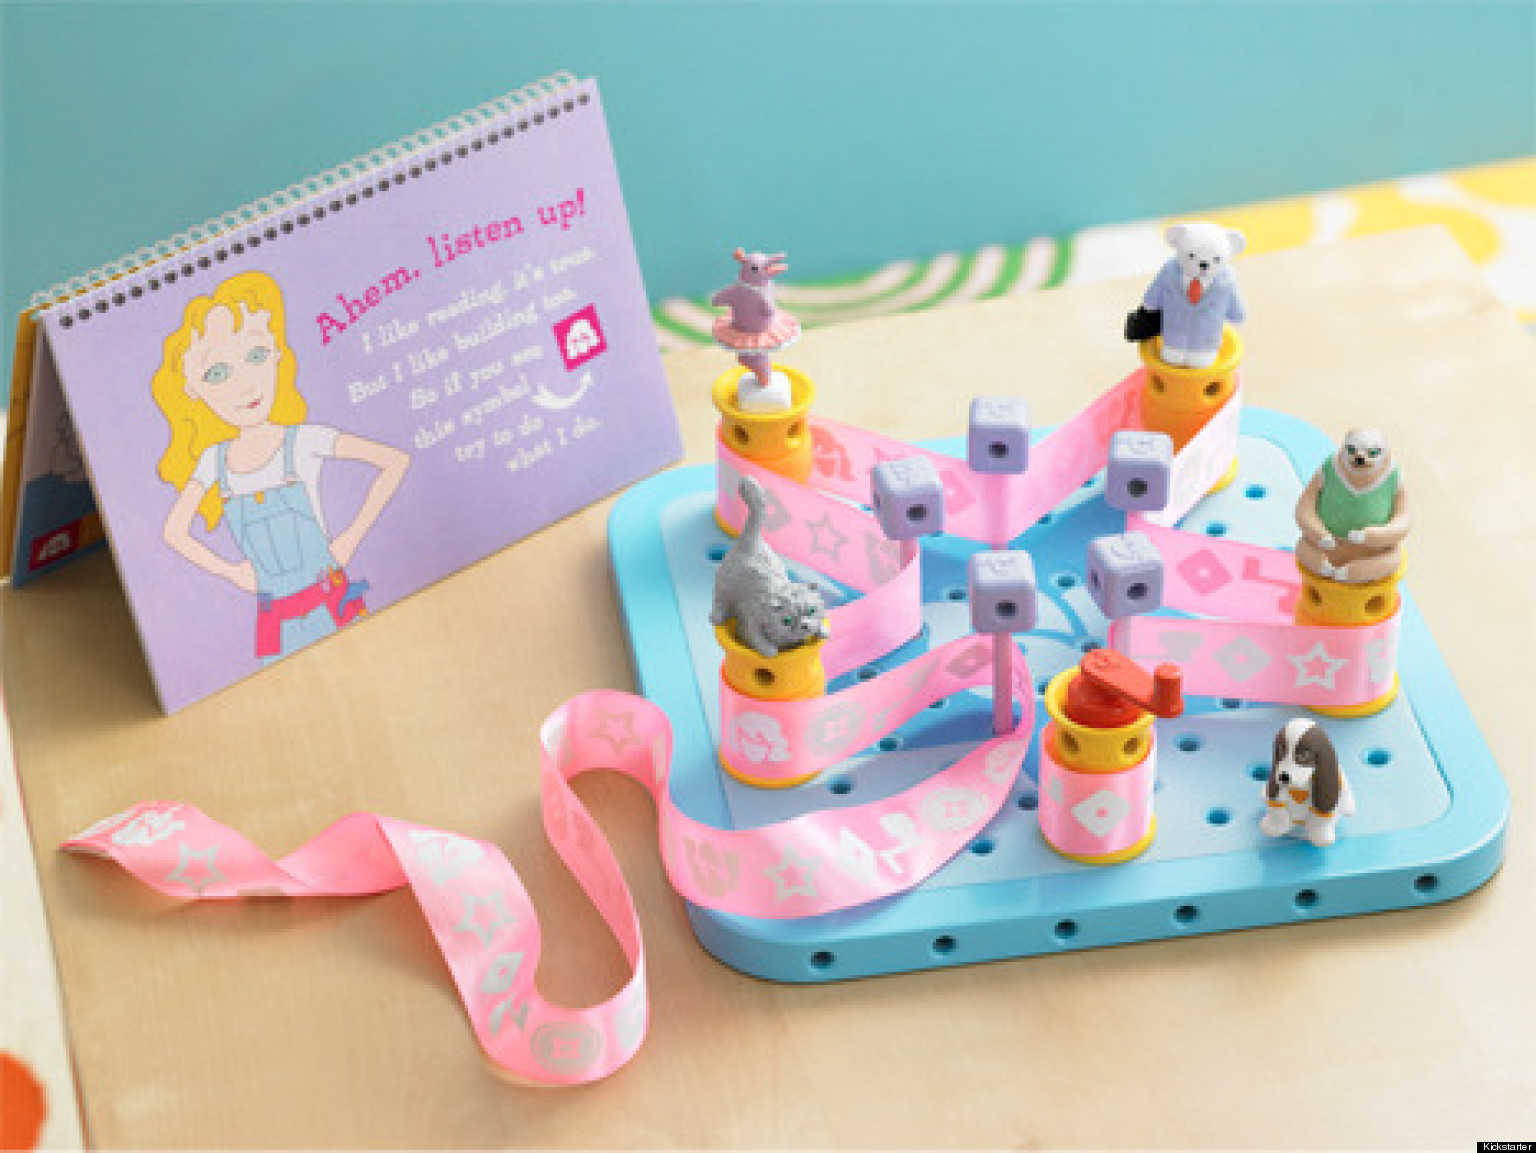 Un juego de GoldieBlox que fomenta que las niñas hagan construcciones. Fuente: Kickstarter.com.